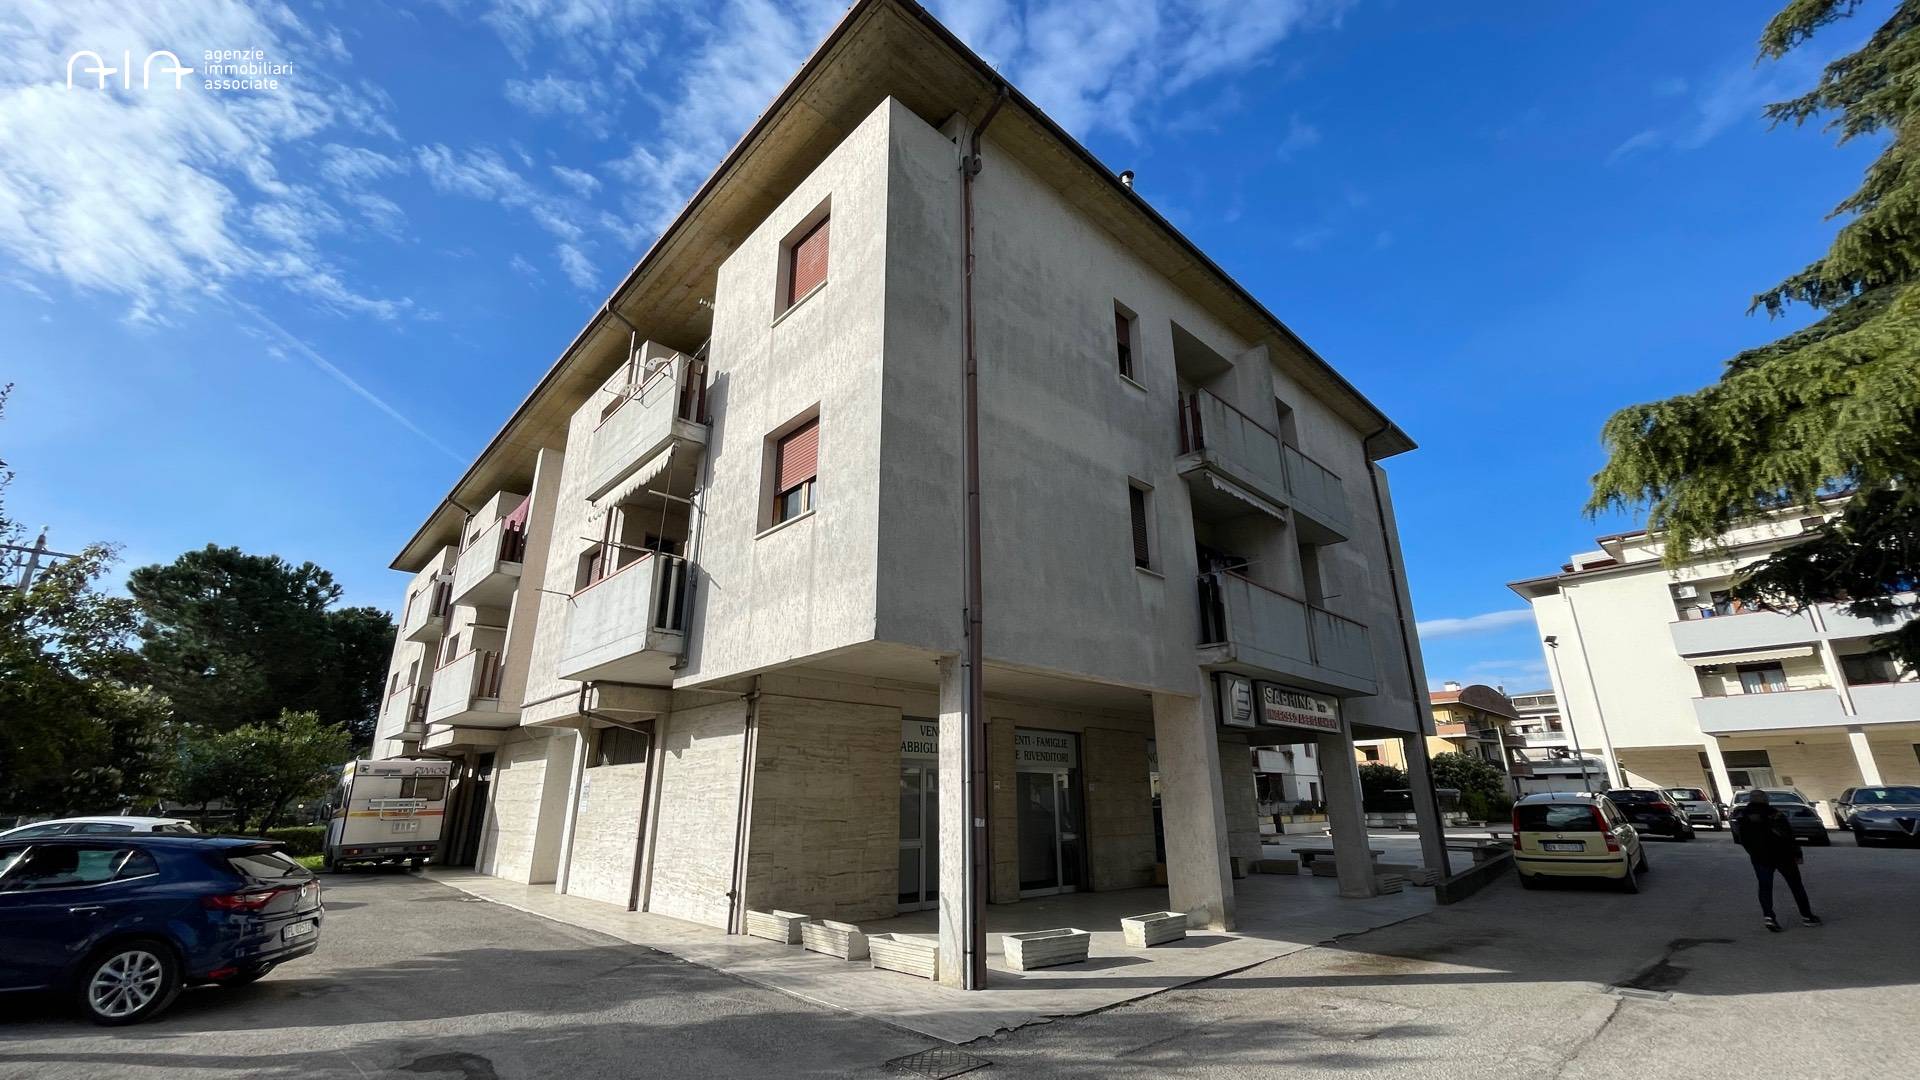 Negozio / Locale in affitto a Spinetoli, 9999 locali, zona Località: PagliaredelTronto, prezzo € 1.000 | PortaleAgenzieImmobiliari.it